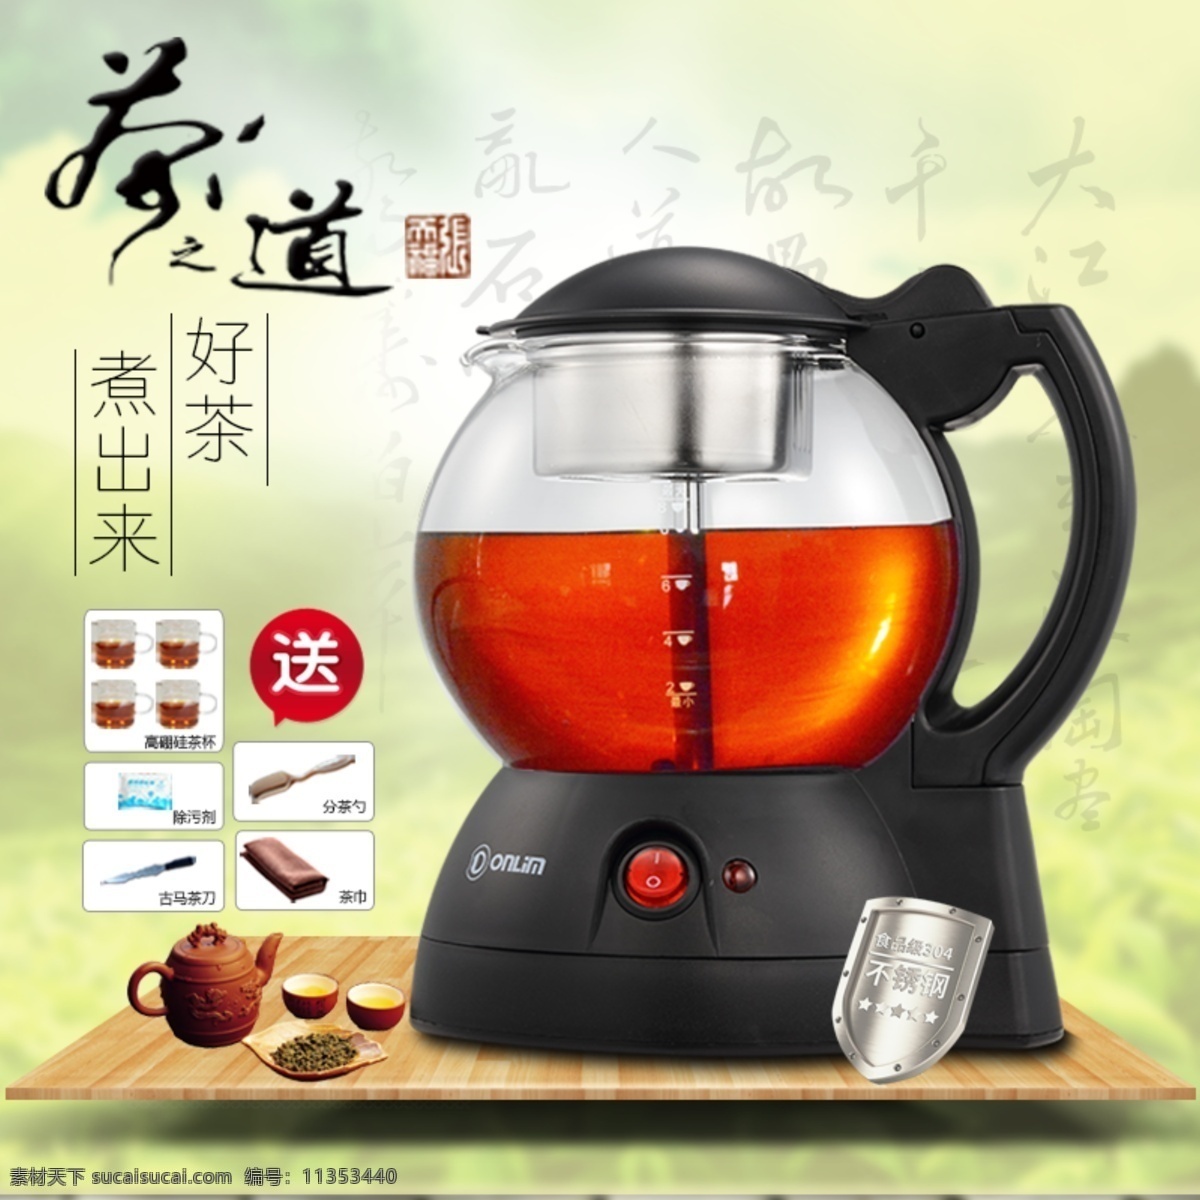 煮 茶 器 中国 风 主 图 煮茶器 中国风 高清 设计图 高清图片素材 设计素材 模板设计 版面设计背景